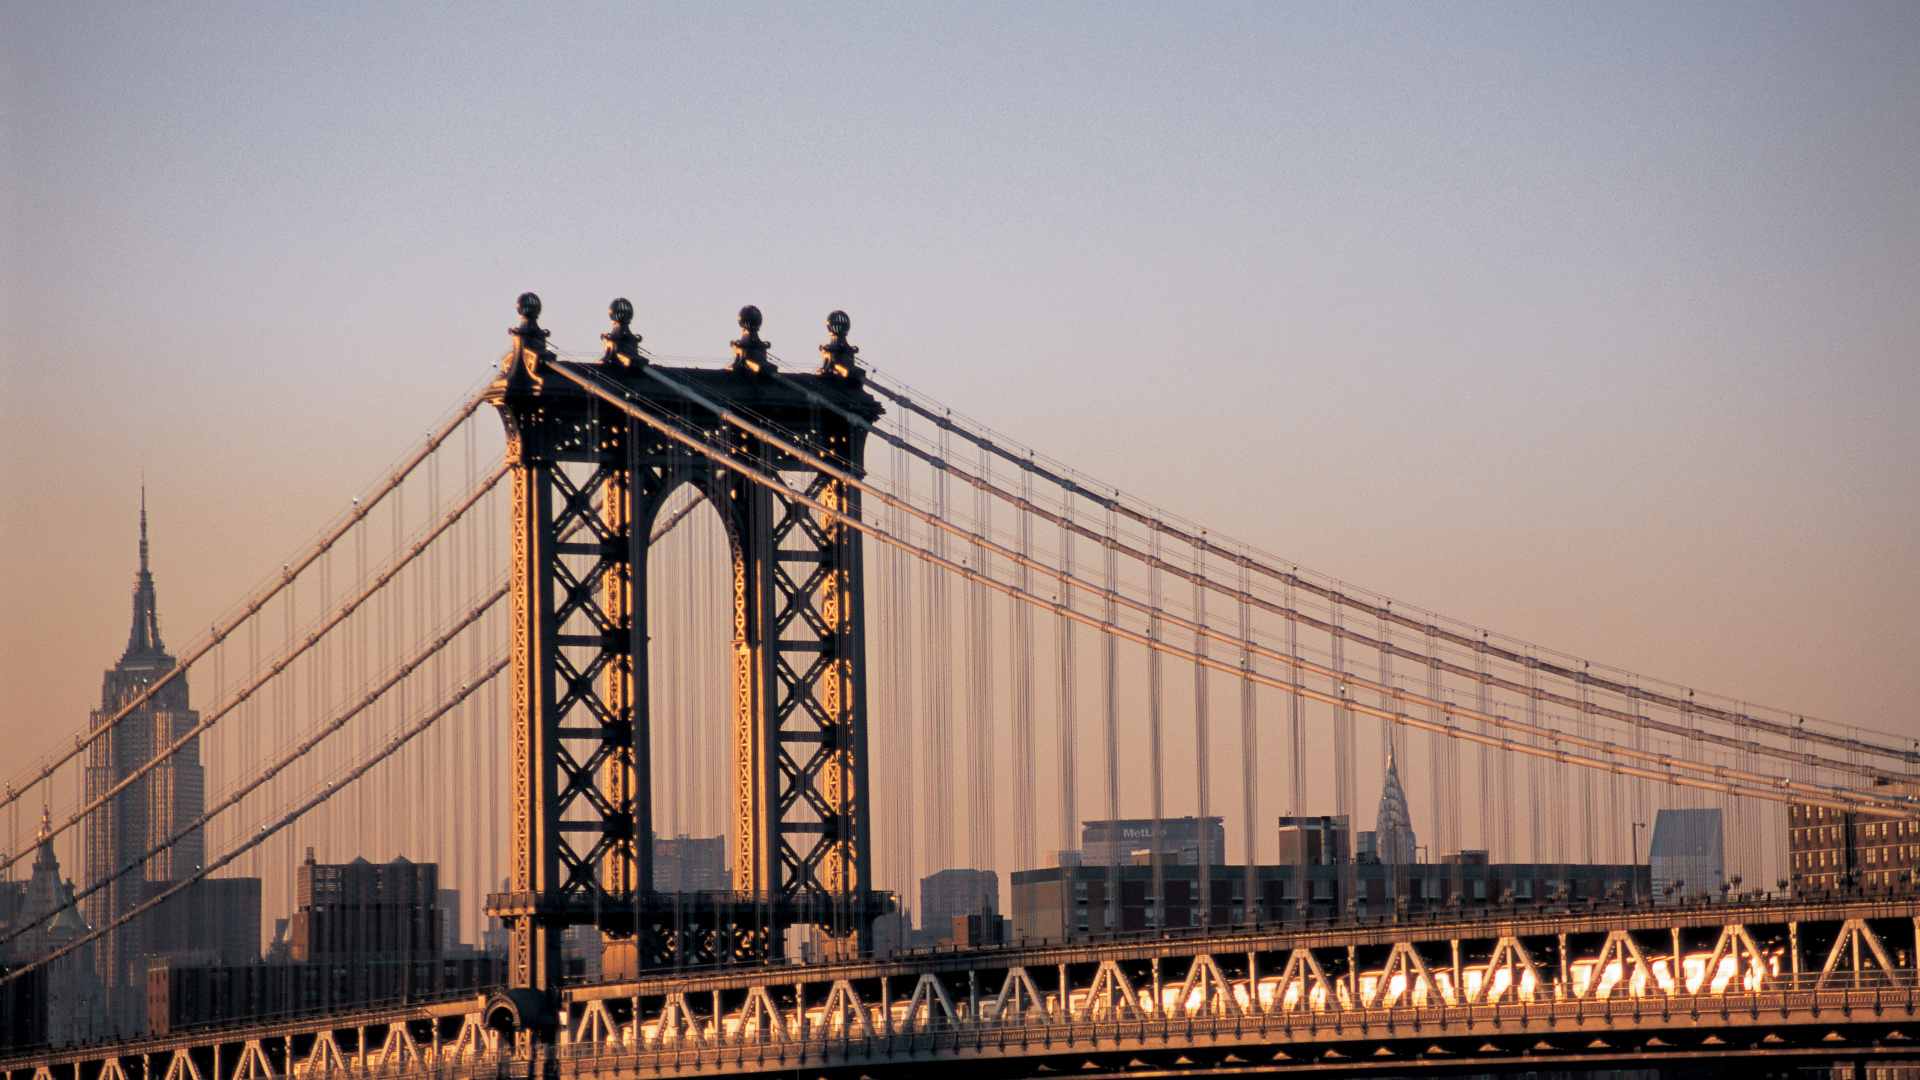 布鲁克林大桥, 曼哈顿大桥, 有线桥, 里程碑, 城市 壁纸 1920x1080 允许